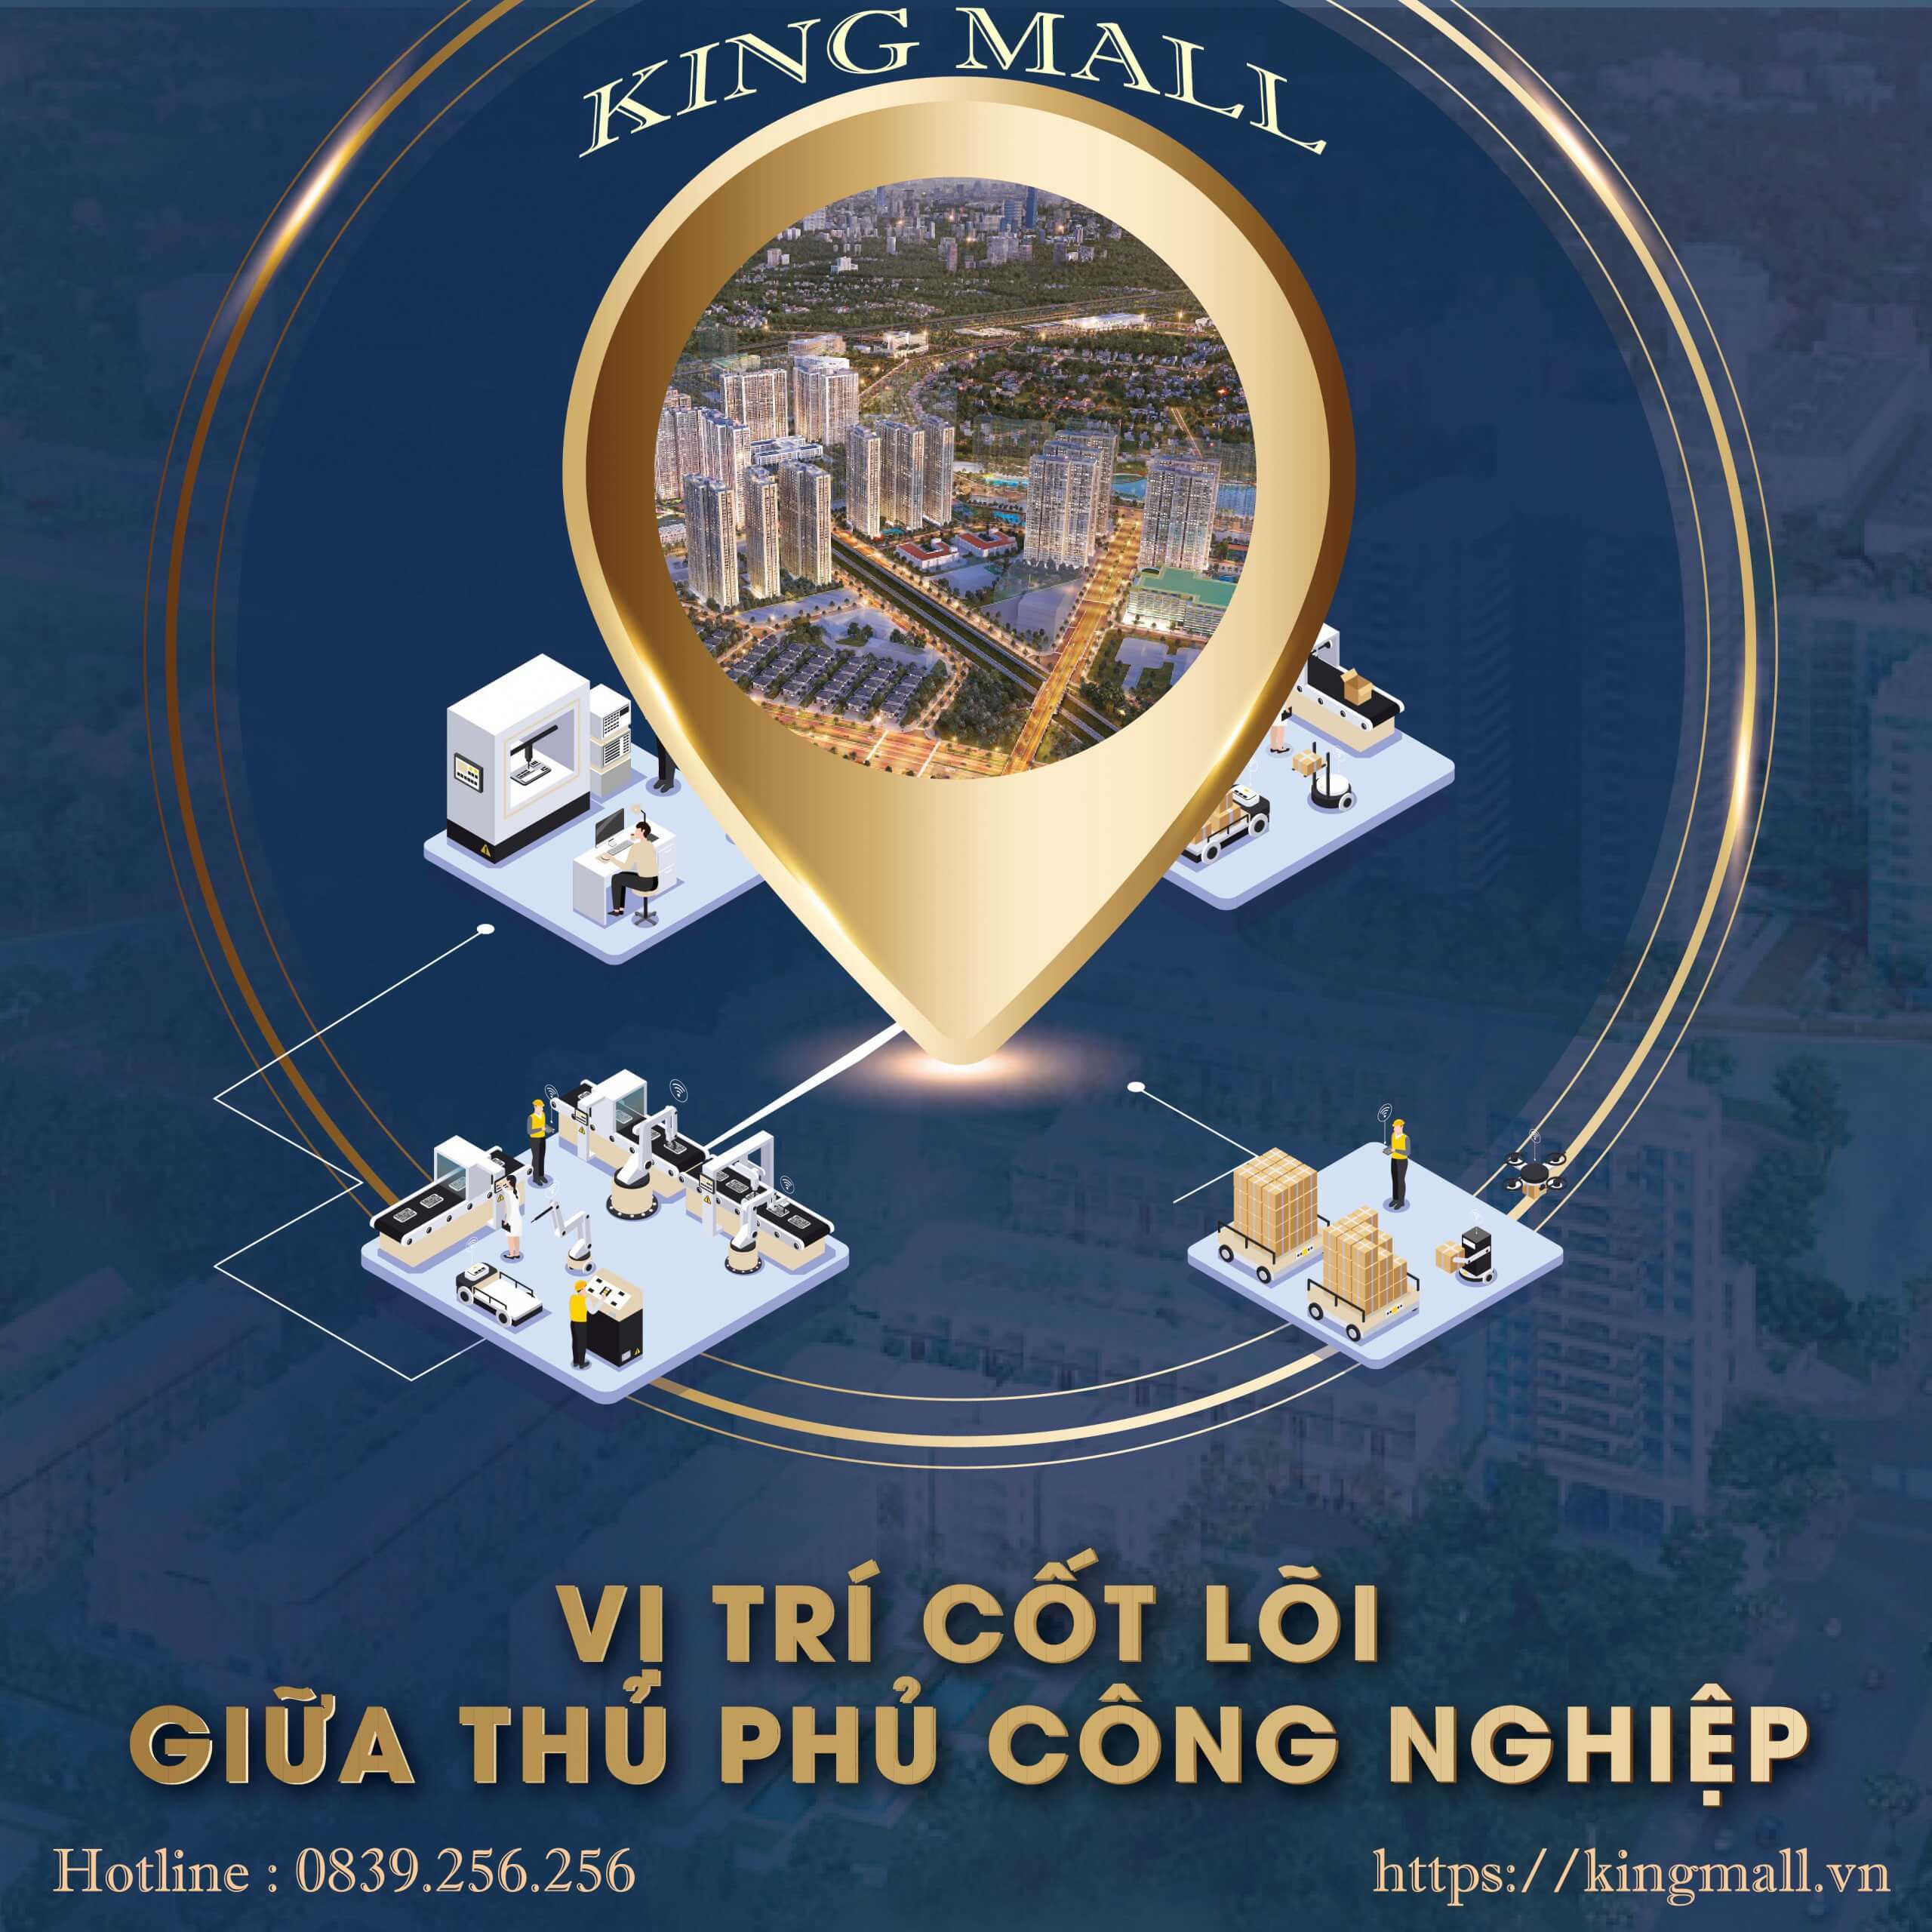 Dự án King Mall sở hữu vị trí cốt lõi giữa thủ phủ công nghiệp